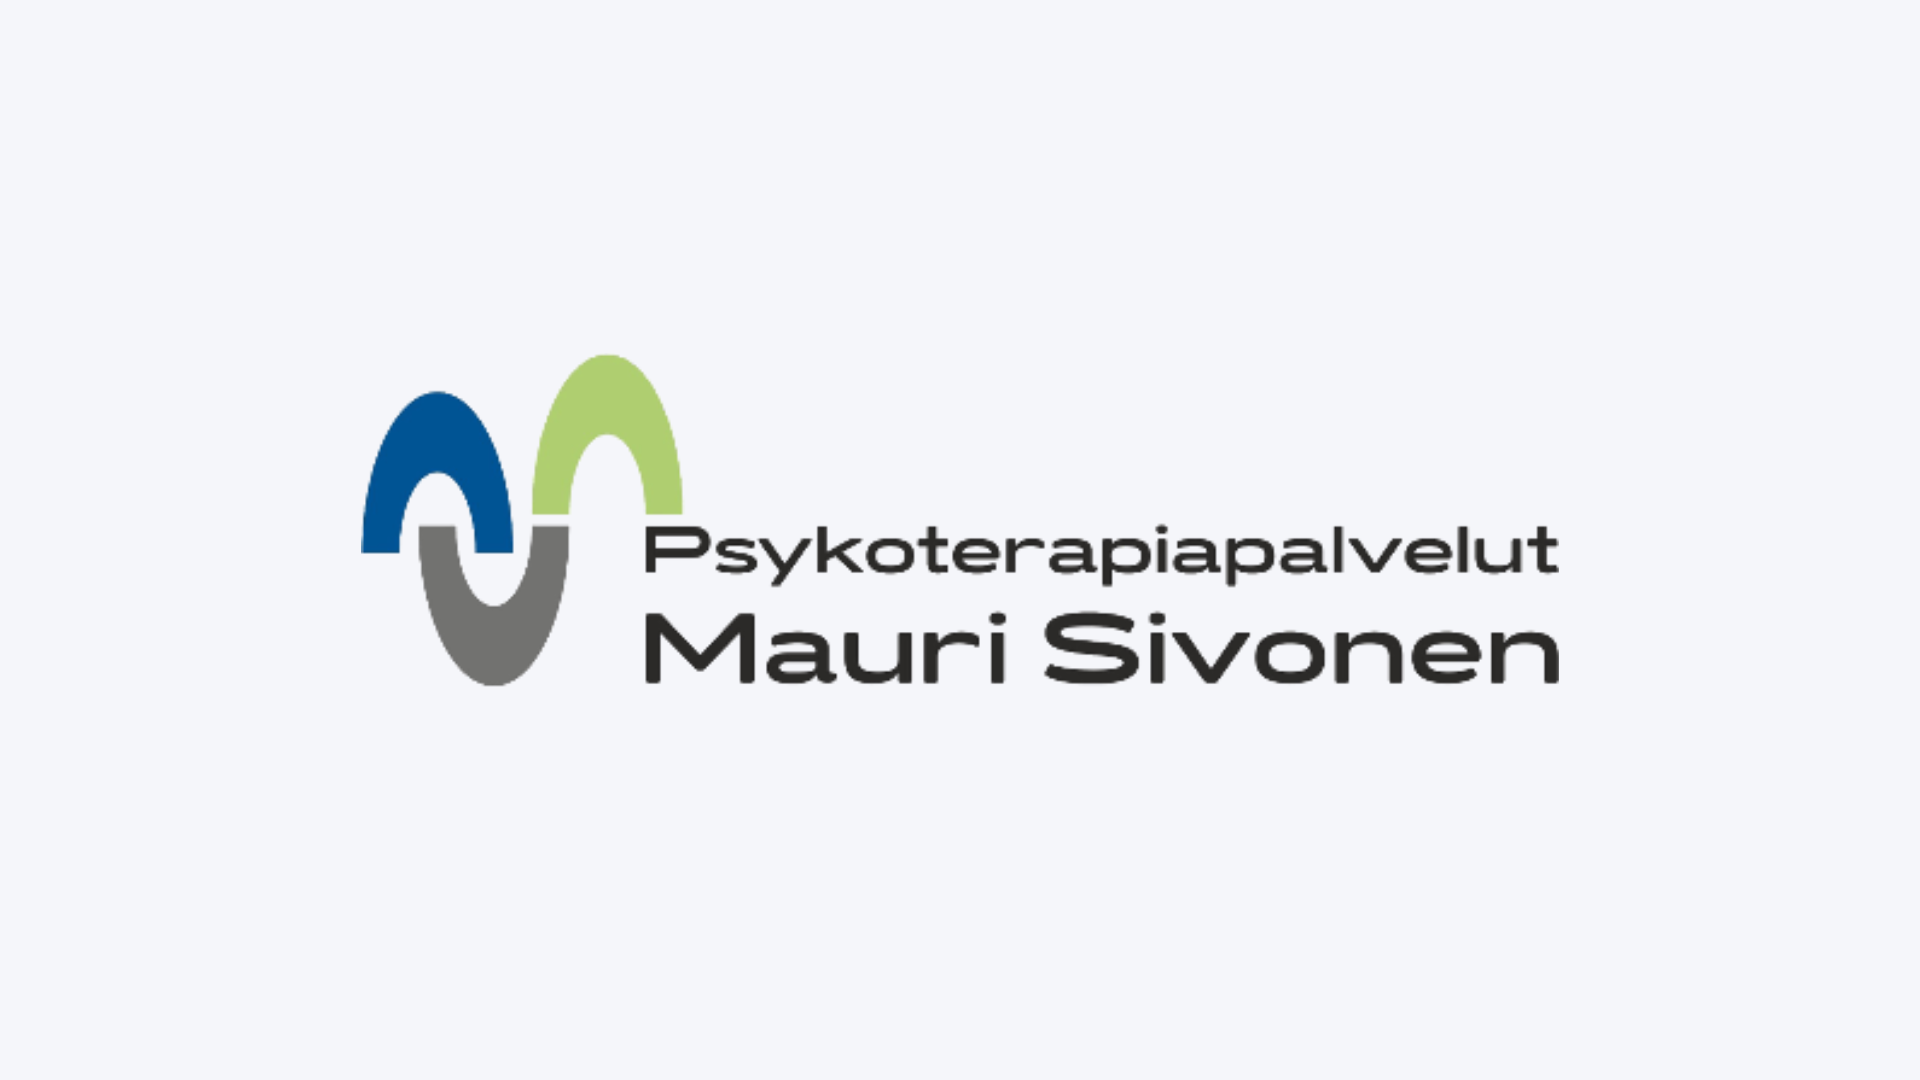 Psykoterapiapalvelut Mauri Sivonen - Saguran verkkosivu referenssi